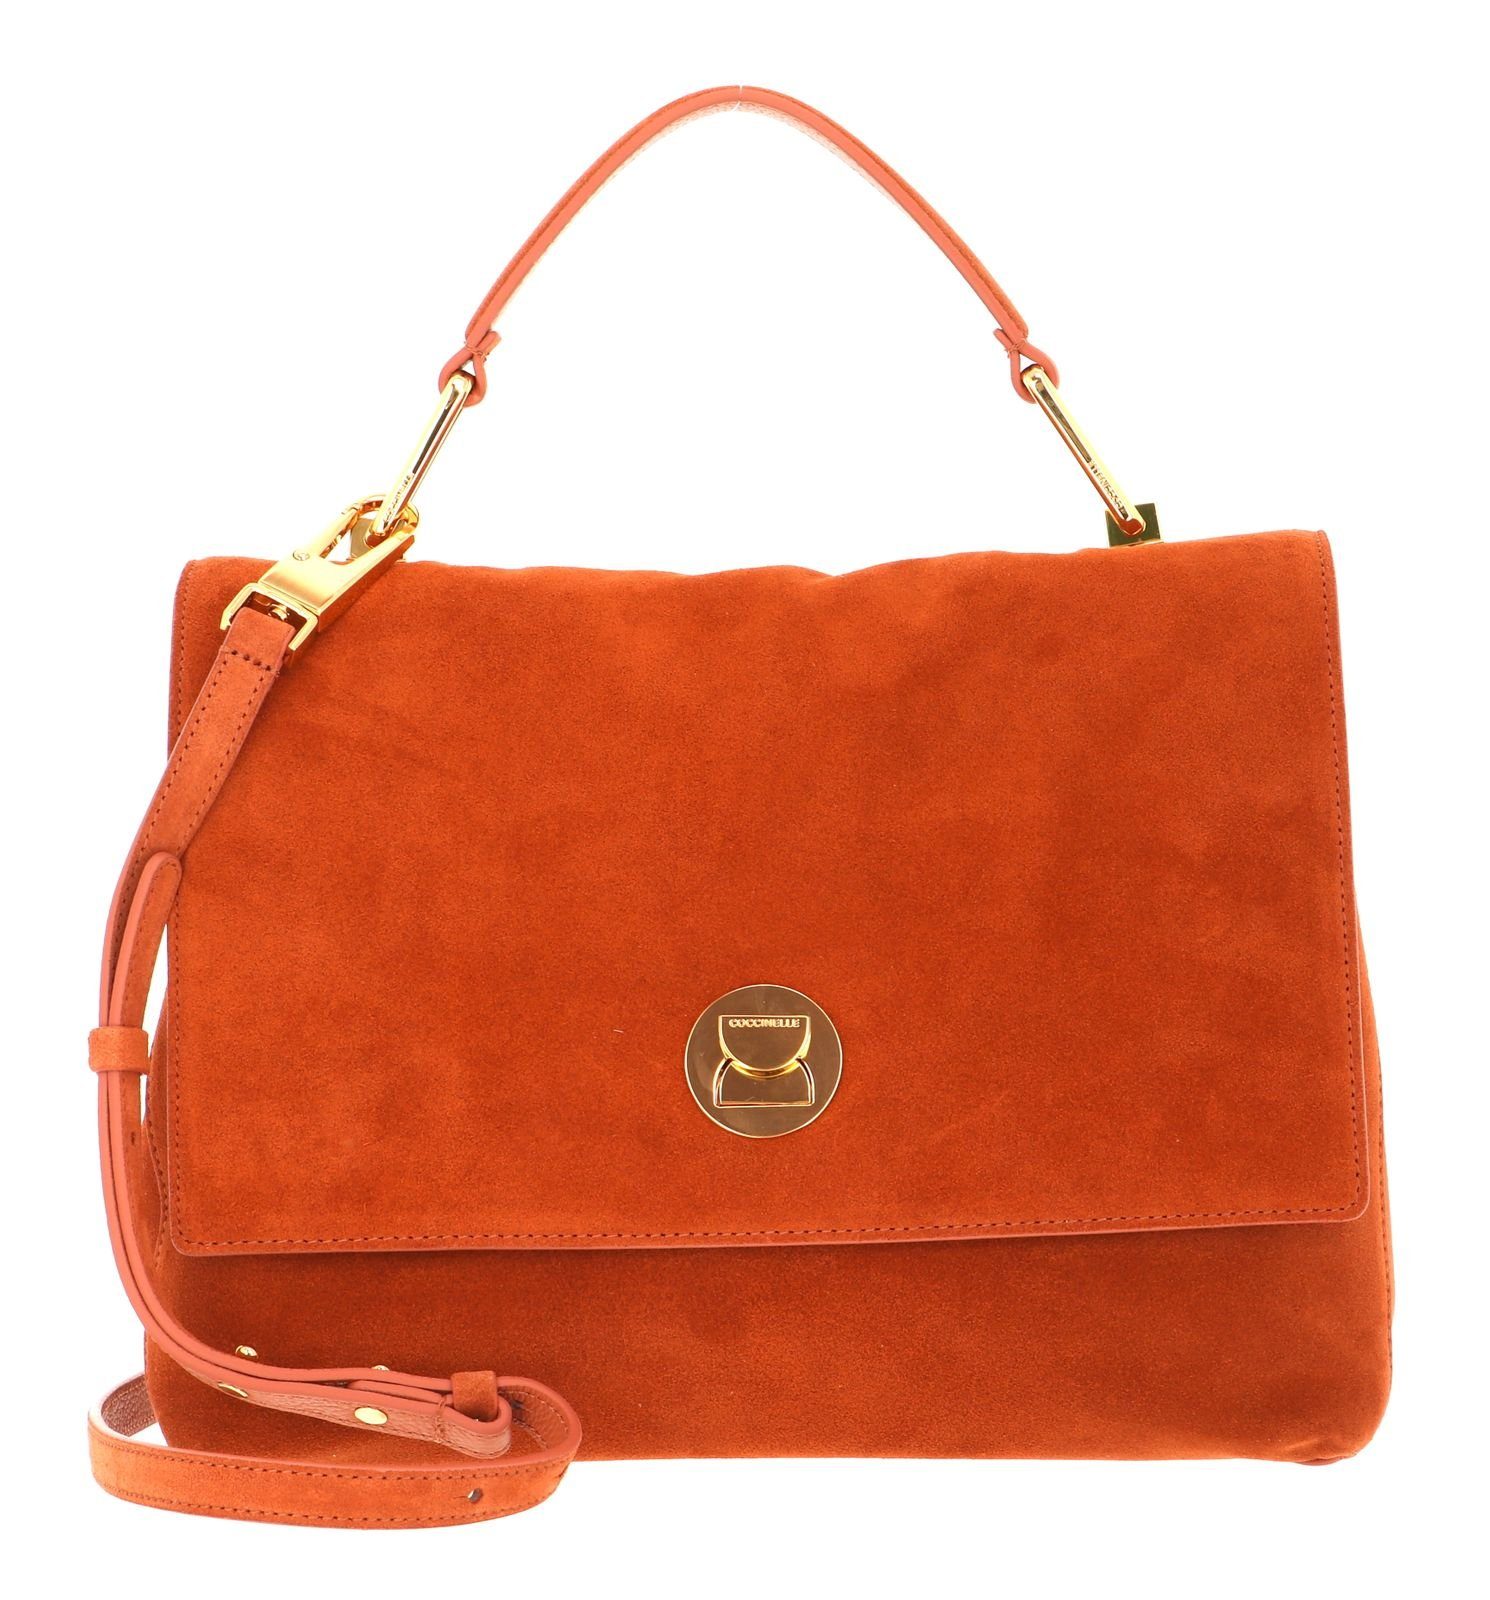 COCCINELLE Handtasche »Liya Suede« online kaufen | OTTO